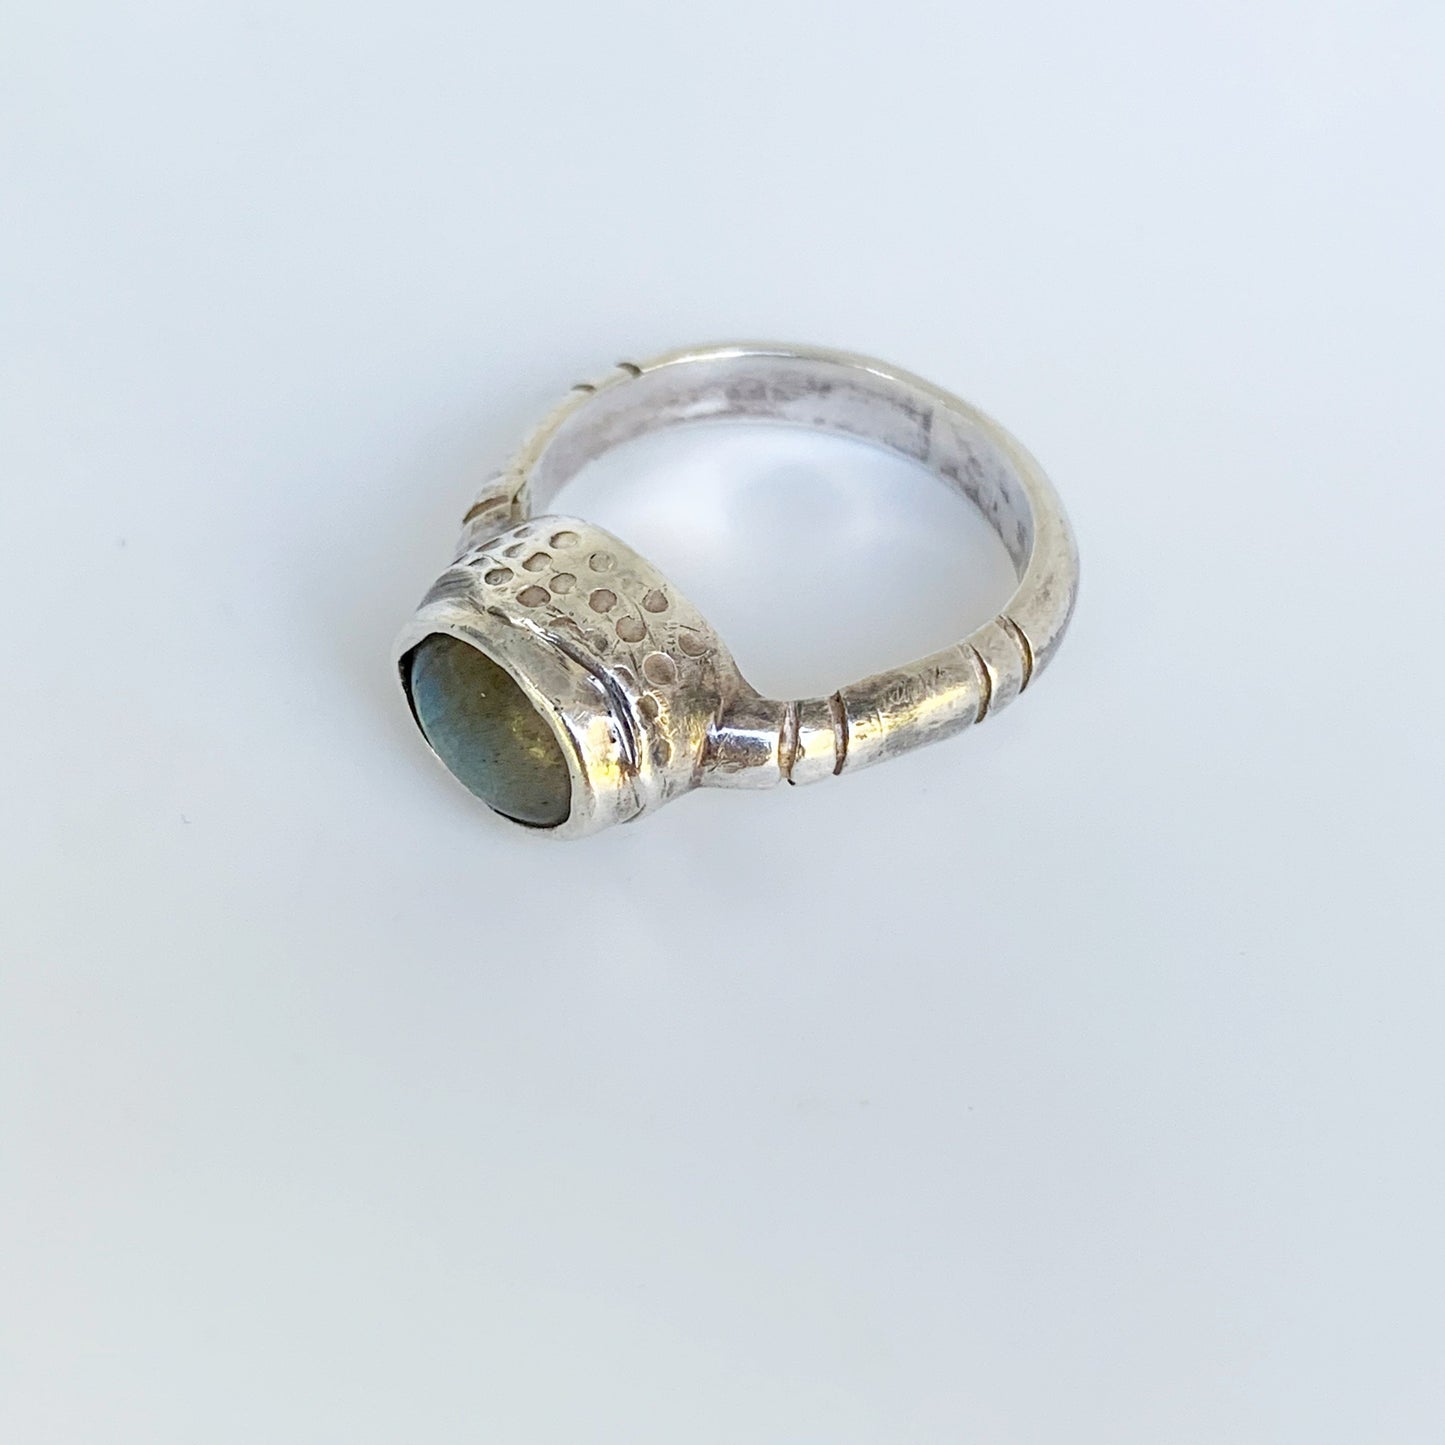 Silver Labradorite Ring | Oval Labradorite Ring | Textured Ring | Size 6 3/4 Ring